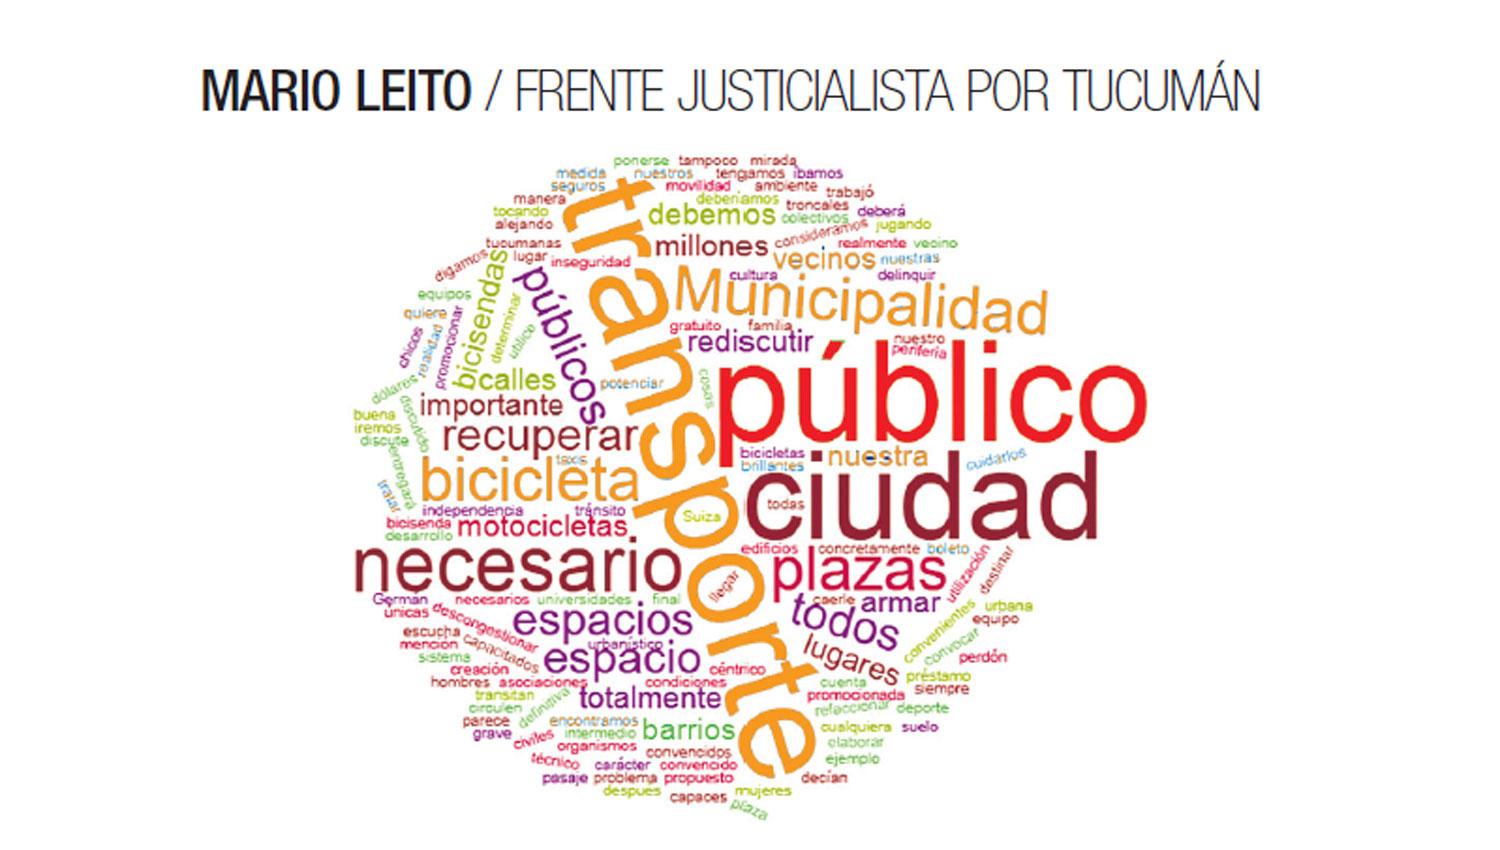 Mario Leito / Frente Justicialista por Tucumán